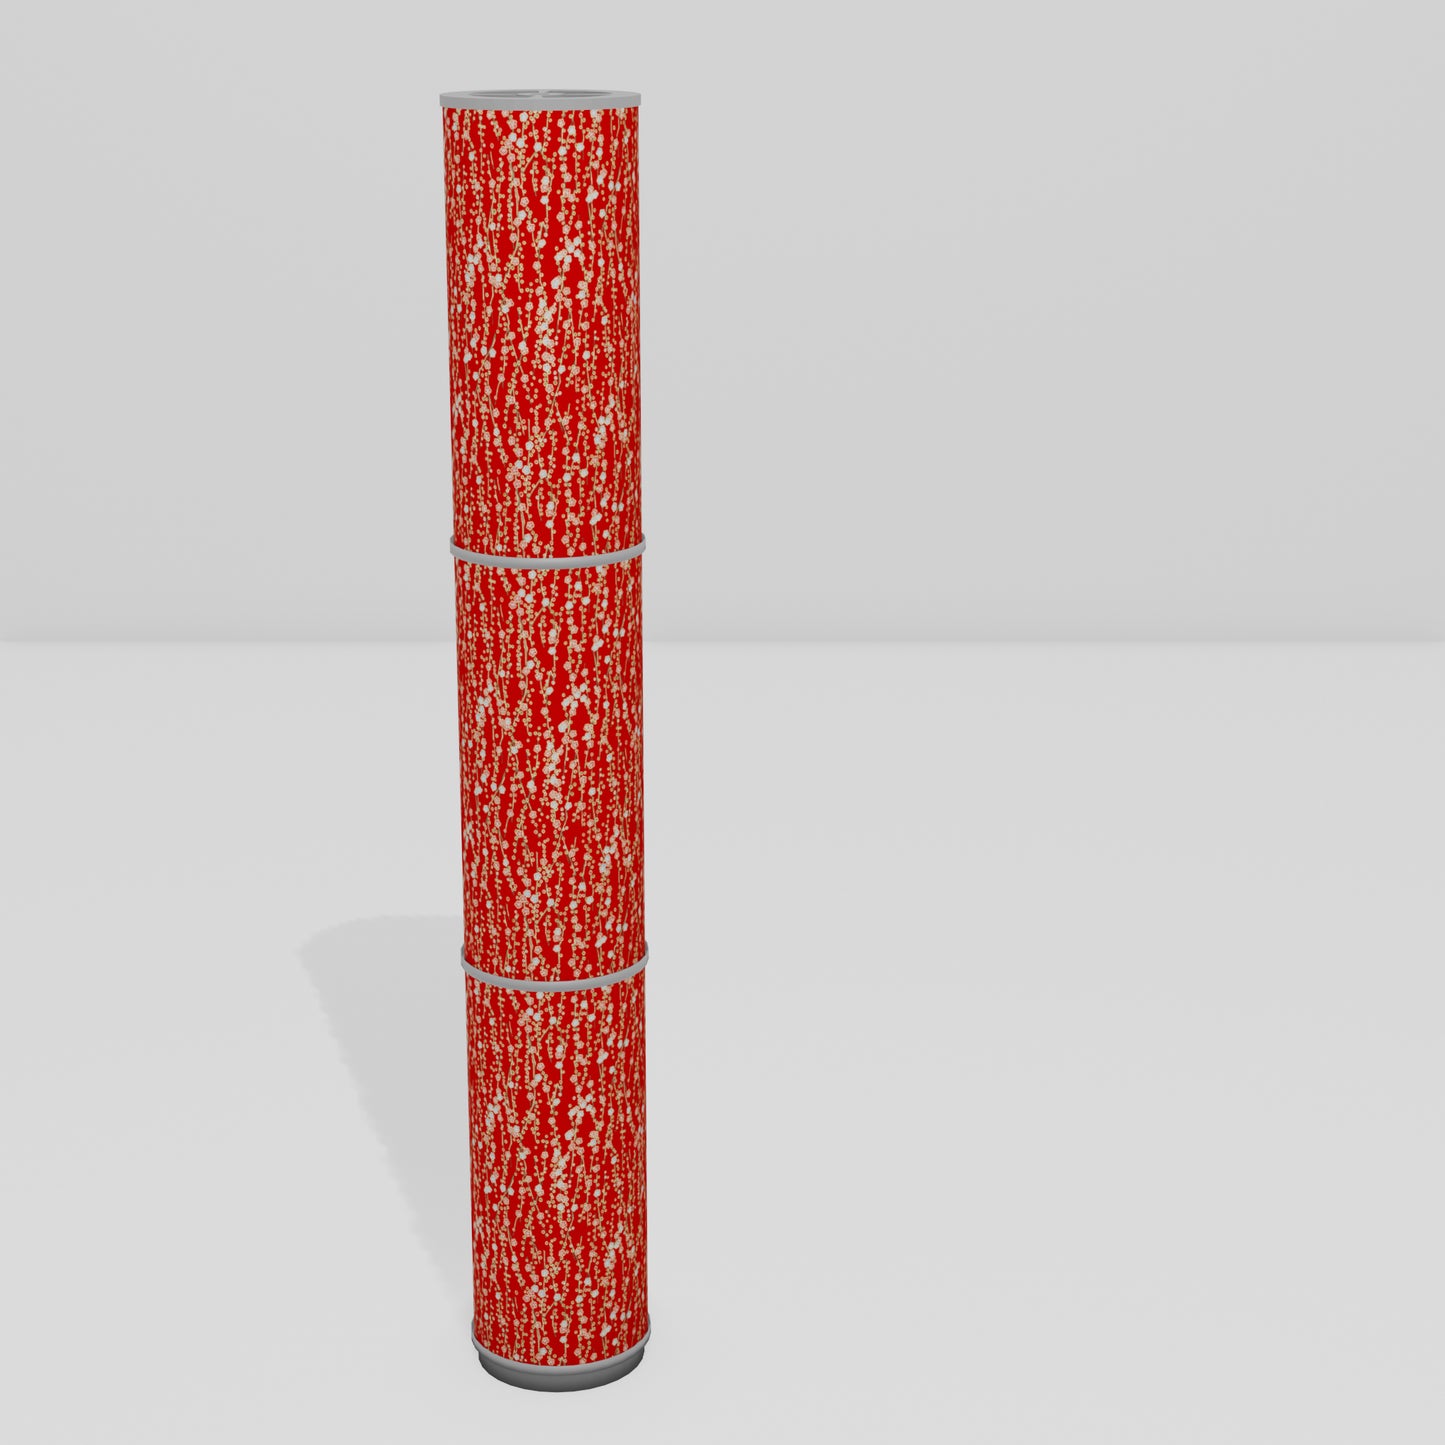 3 Panel Floor Lamp - W01 - Red Daisies, 20cm(d) x 1.4m(h)